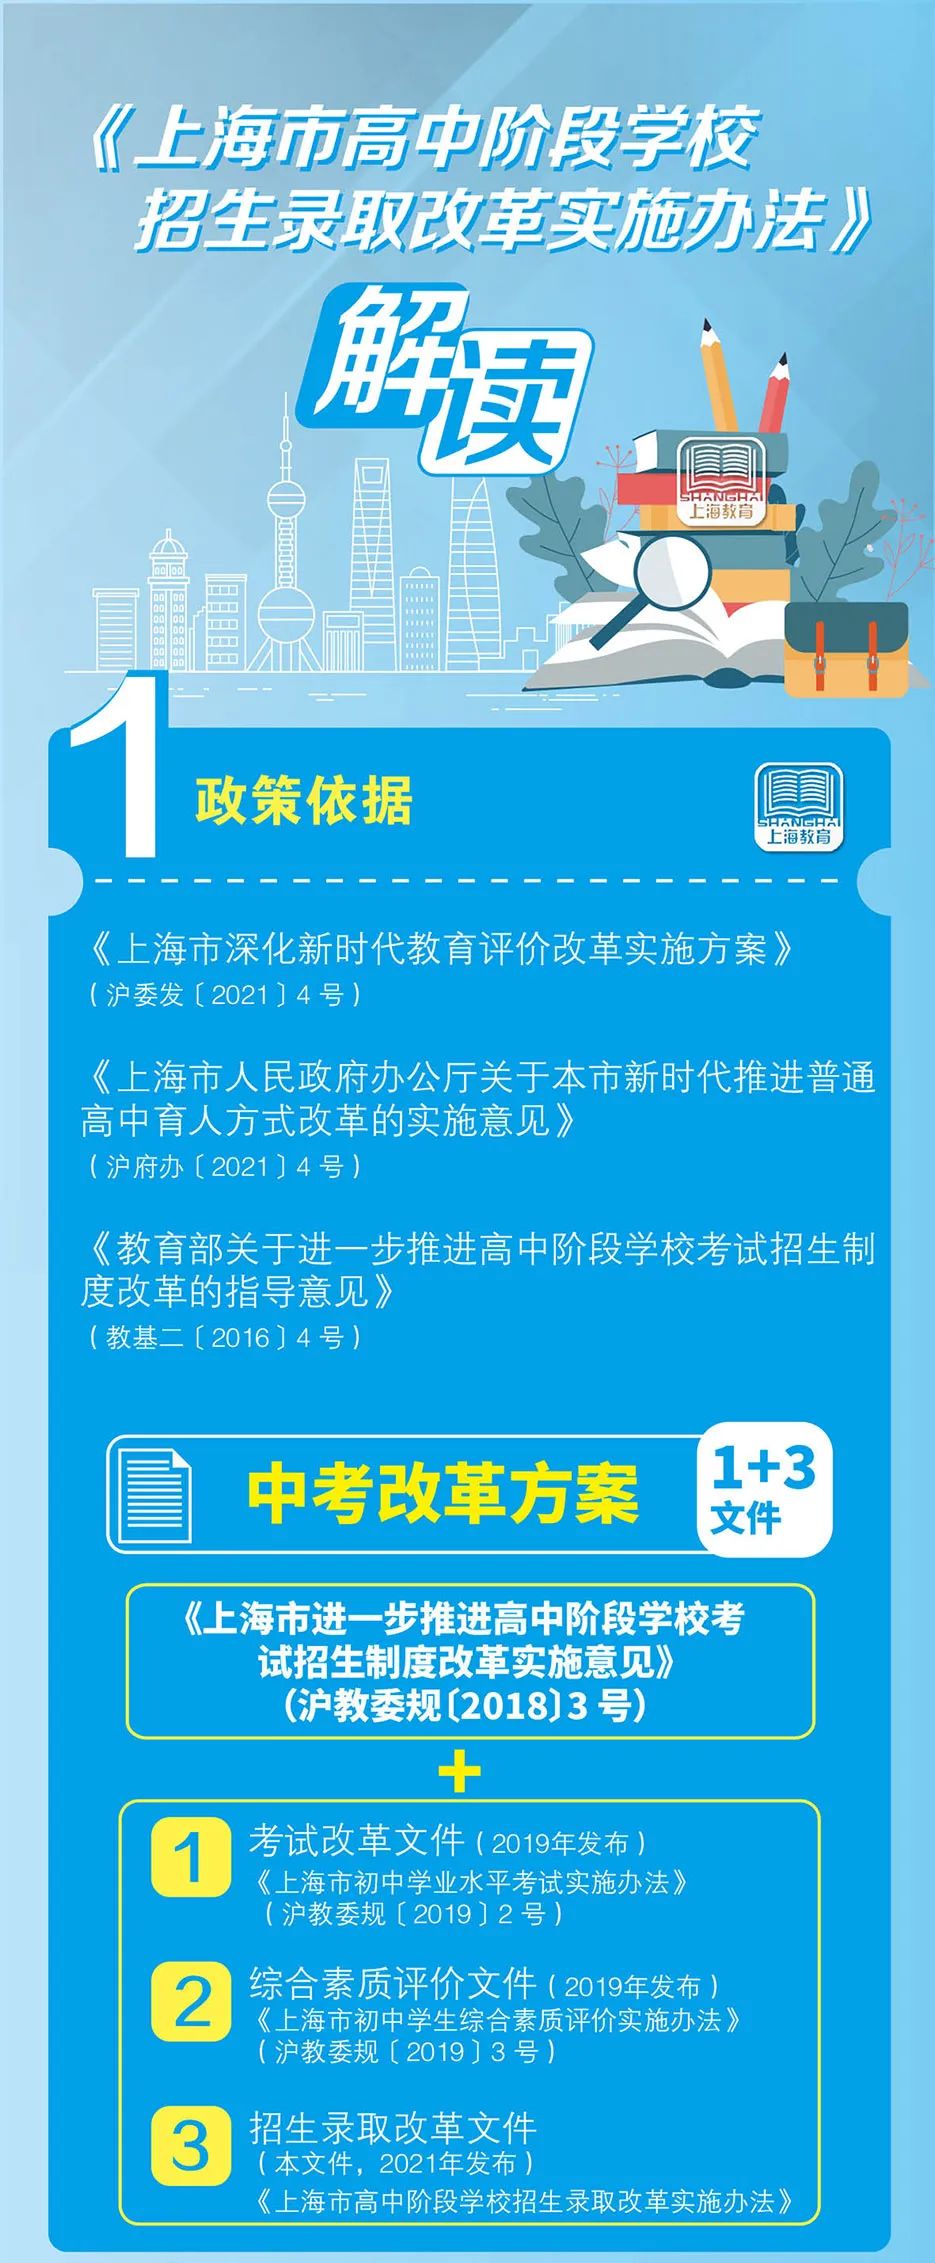 本文图片均来自“上海教育”微信公众号